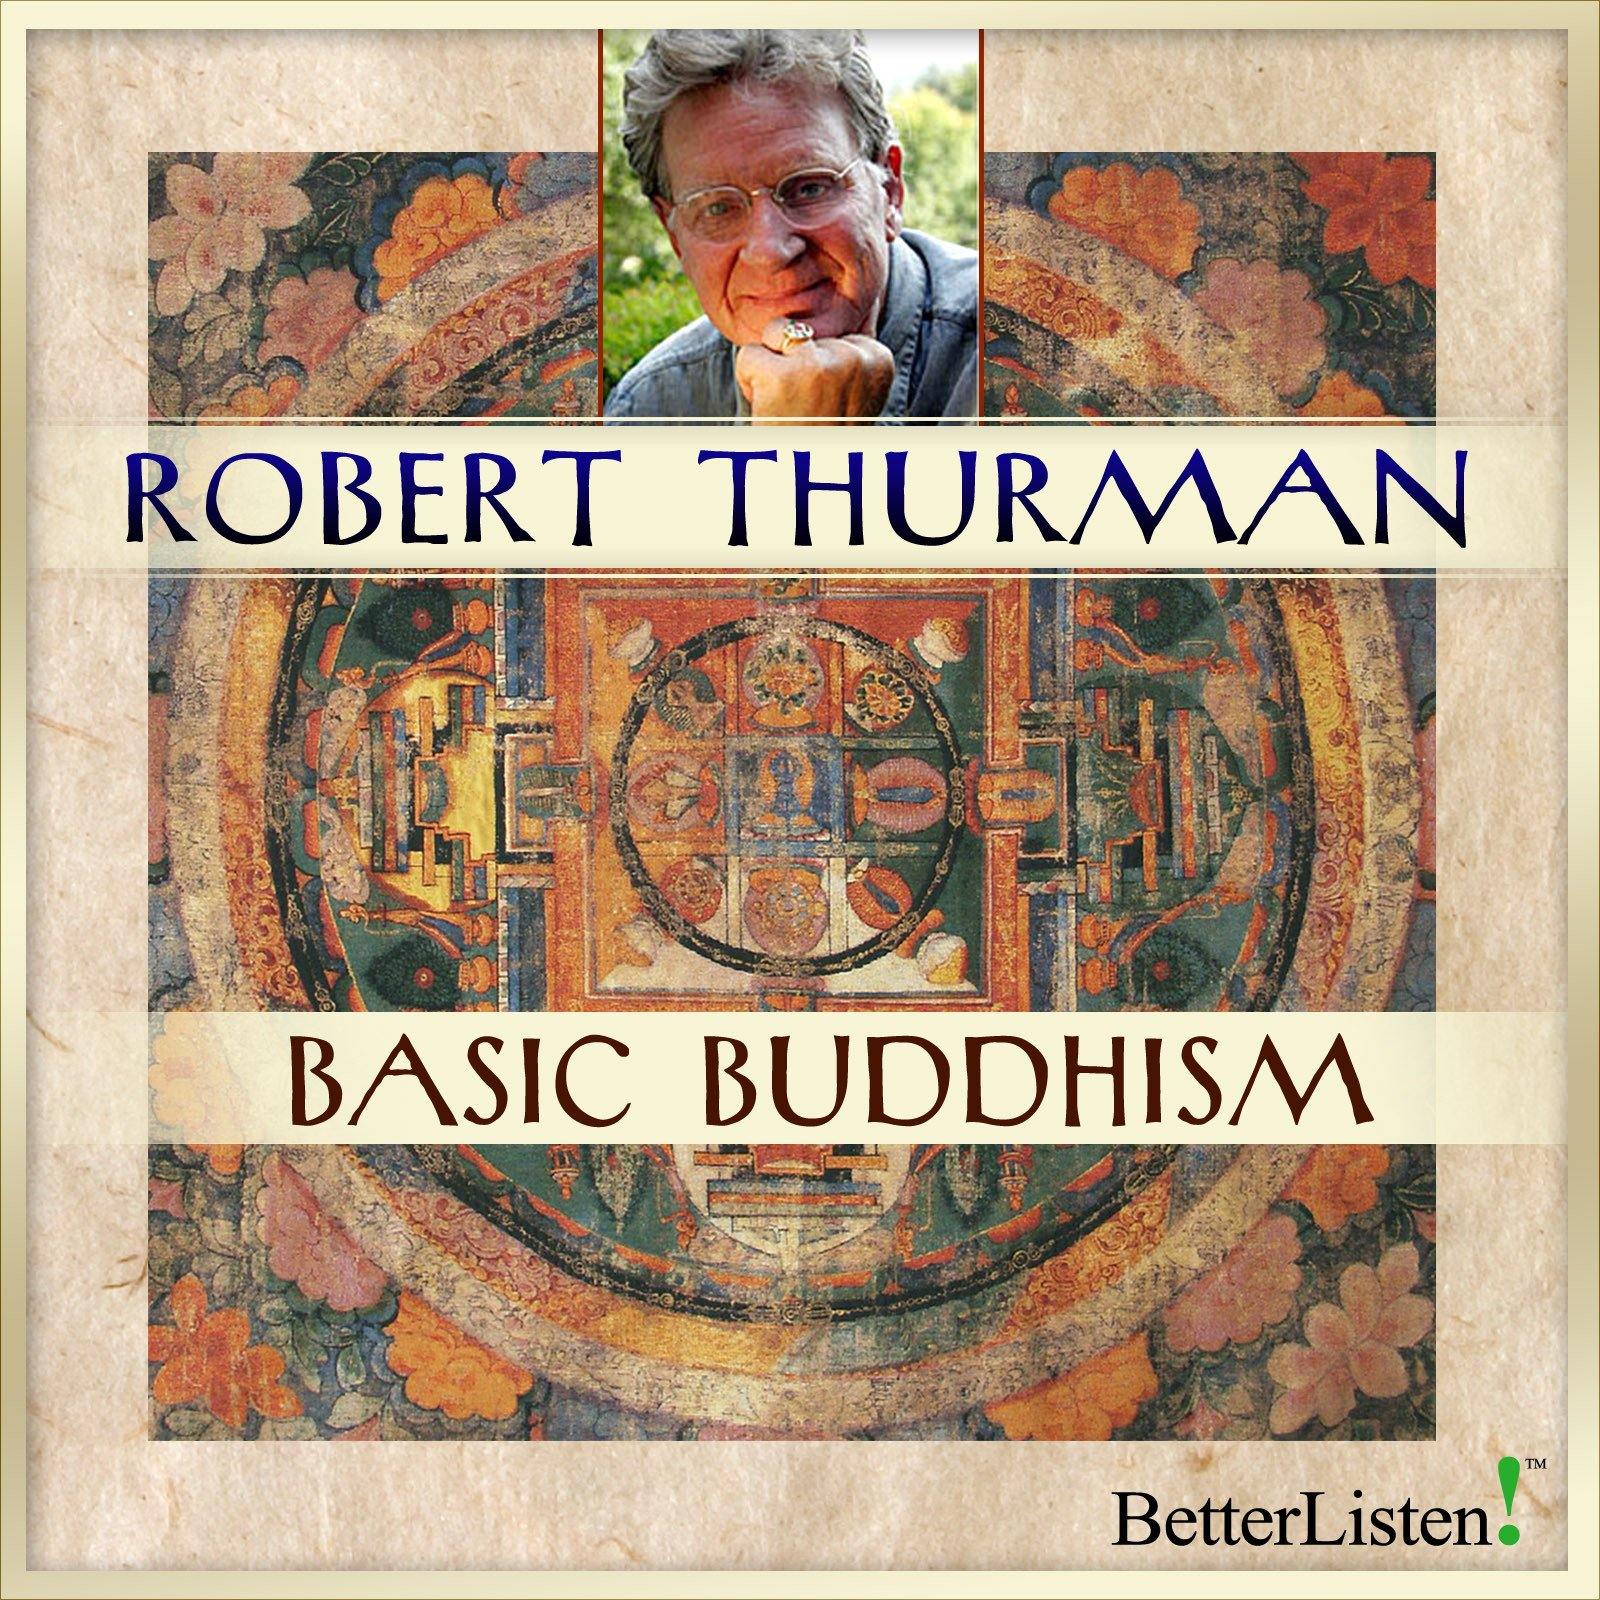 Basic Buddhism with Robert Thurman Audio Program Robert Thurman - BetterListen!